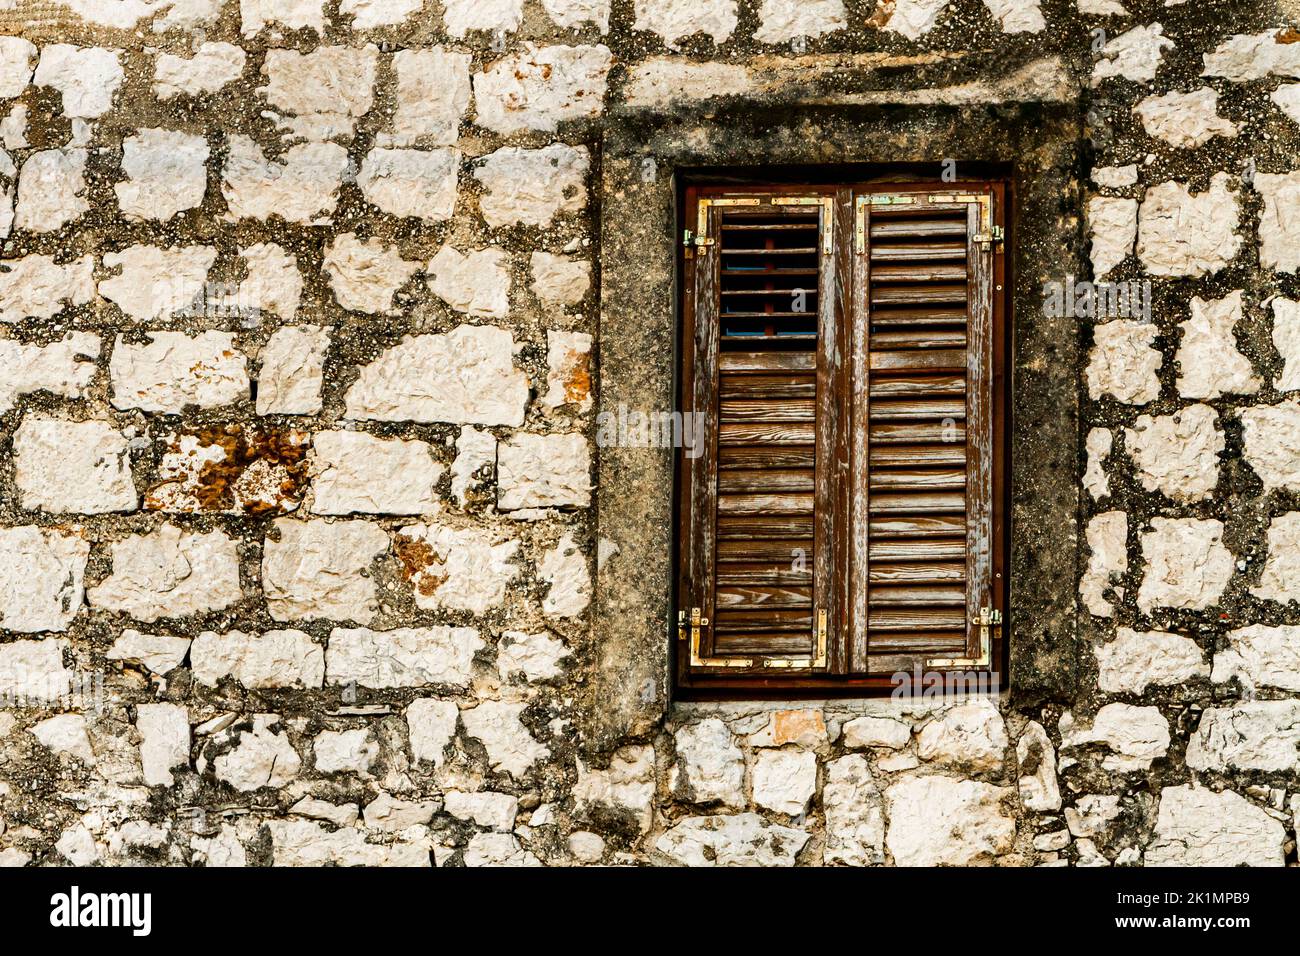 Detalle de la pared de piedra y la ventana con persianas de madera cerradas Foto de stock